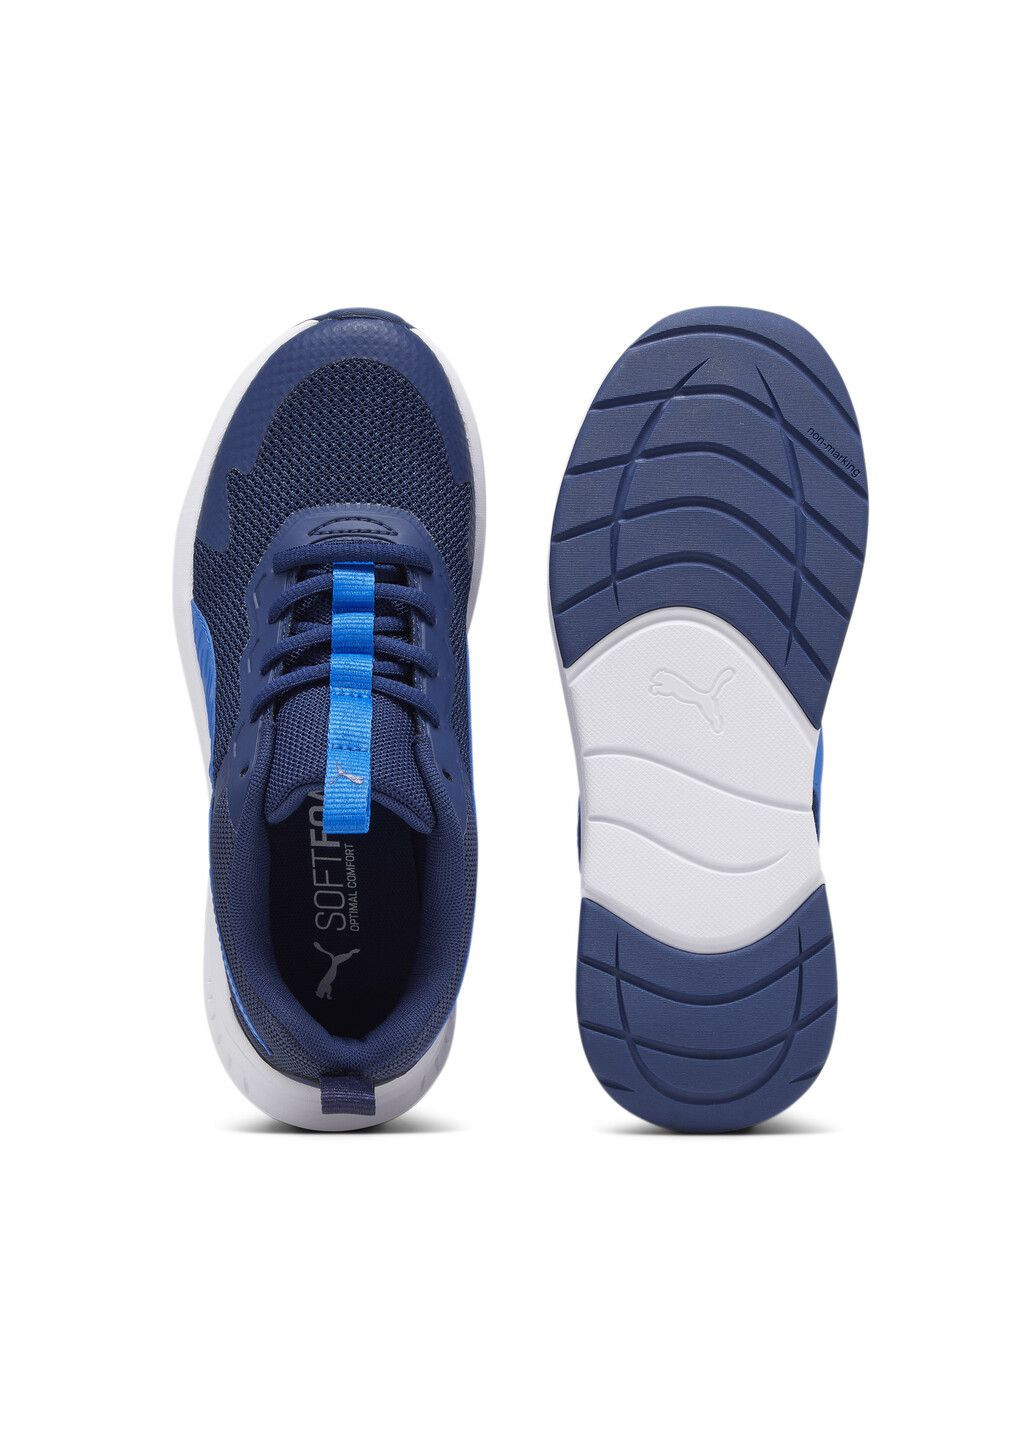 Синие всесезонные кроссовки evolve run mesh sneakers youth Puma